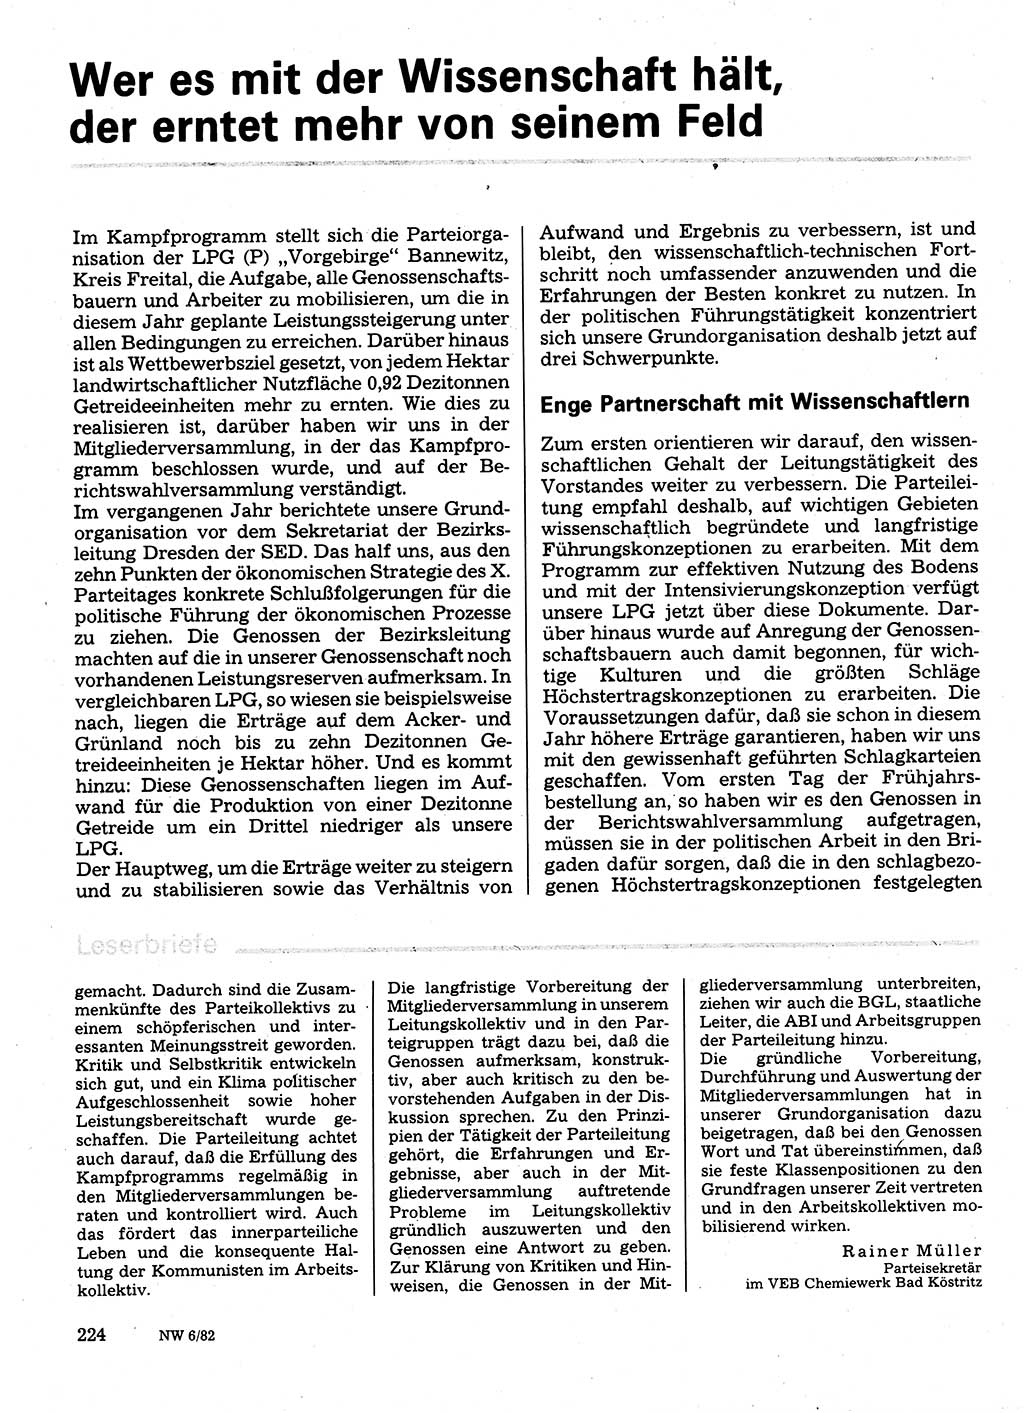 Neuer Weg (NW), Organ des Zentralkomitees (ZK) der SED (Sozialistische Einheitspartei Deutschlands) für Fragen des Parteilebens, 37. Jahrgang [Deutsche Demokratische Republik (DDR)] 1982, Seite 224 (NW ZK SED DDR 1982, S. 224)